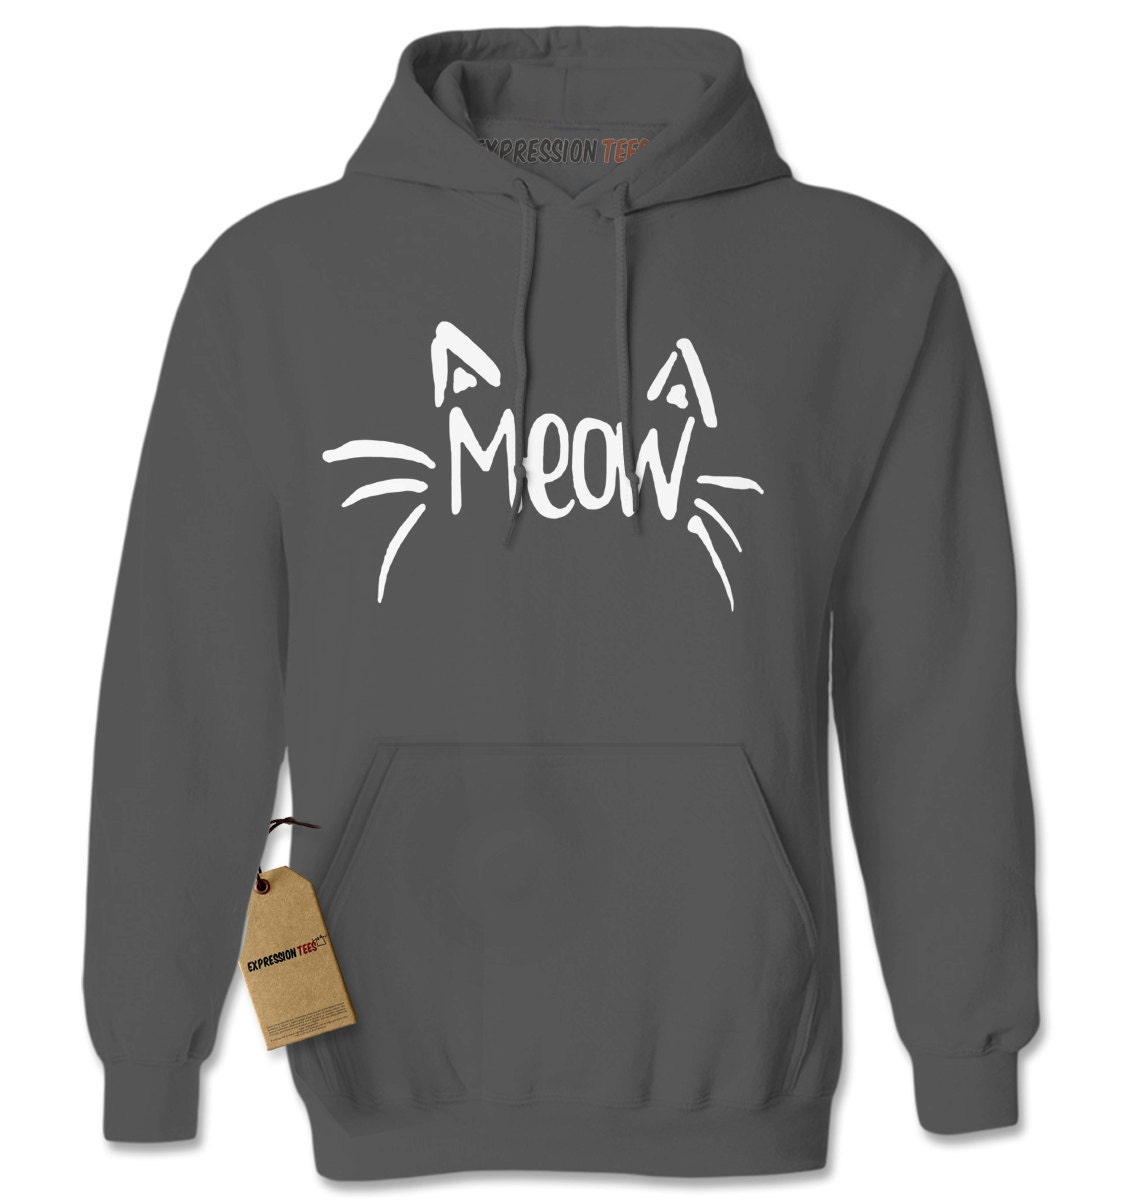 Hoodie Meow Hooded Jacket Sweatshirt Kitten Cat Whiskers | Etsy